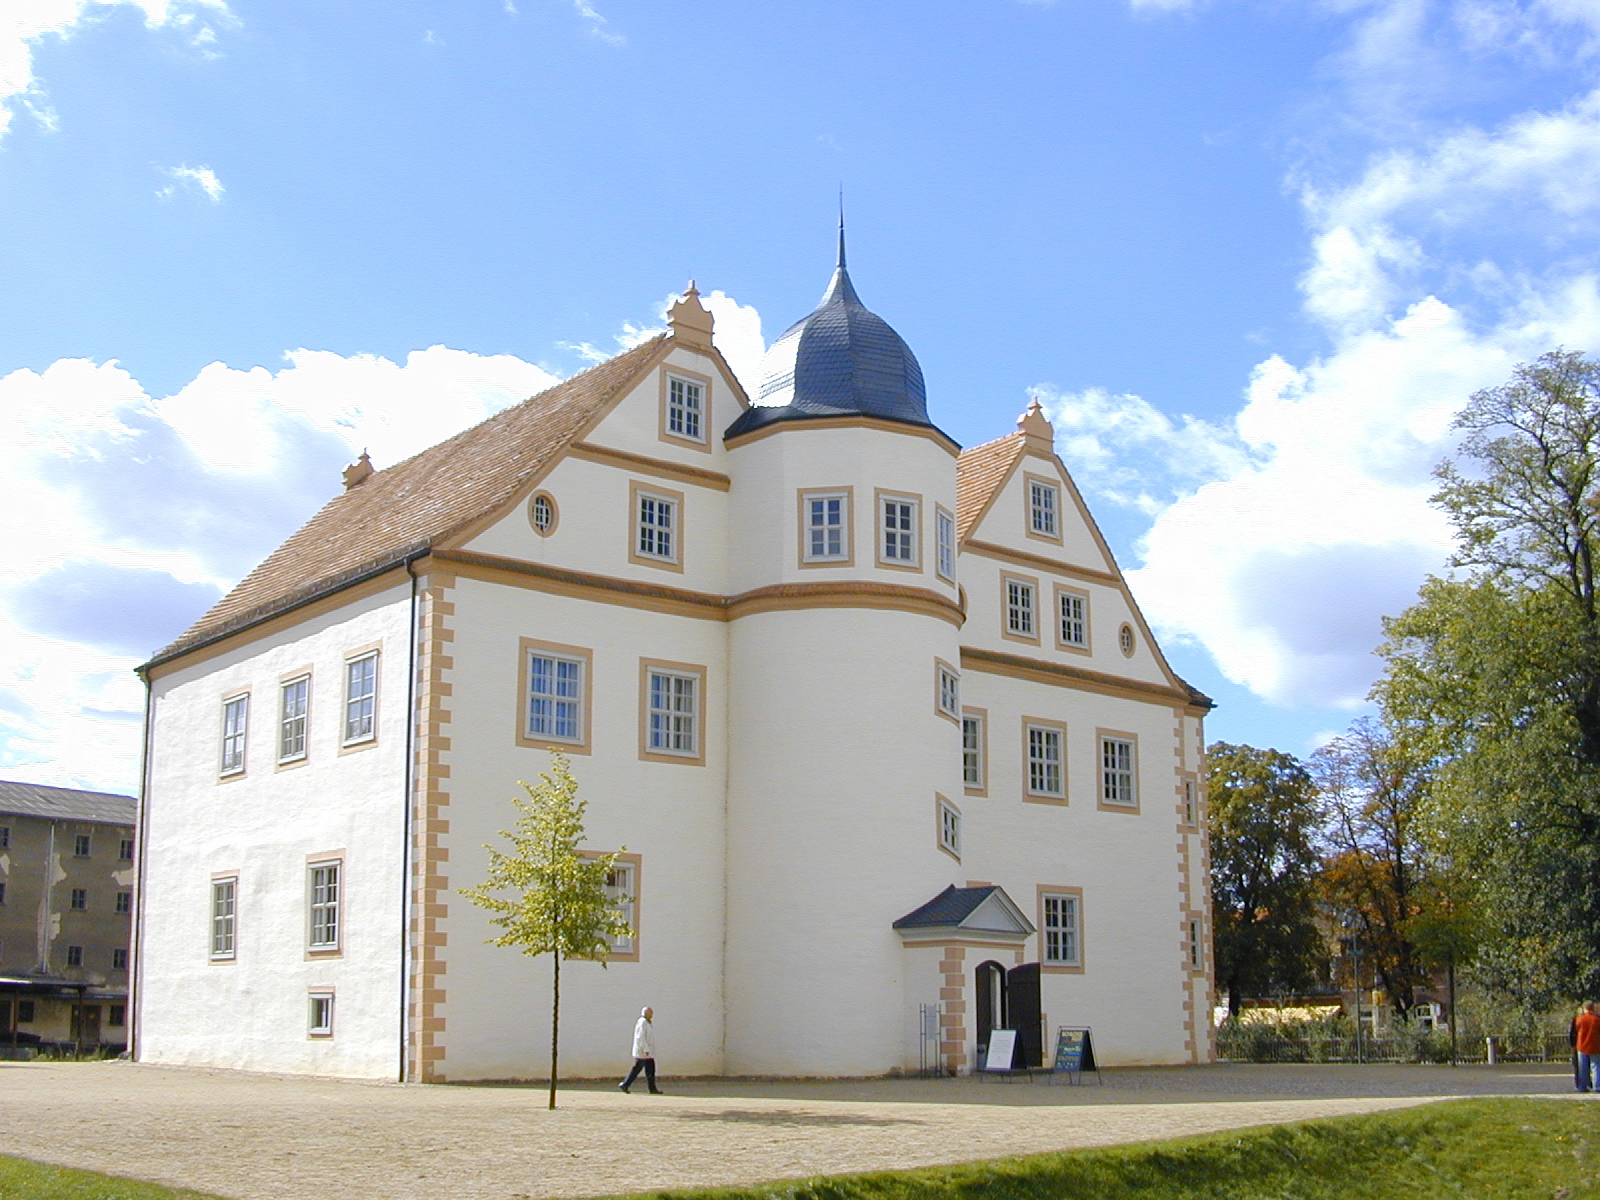 Schloss Königs Wusterhausen.
